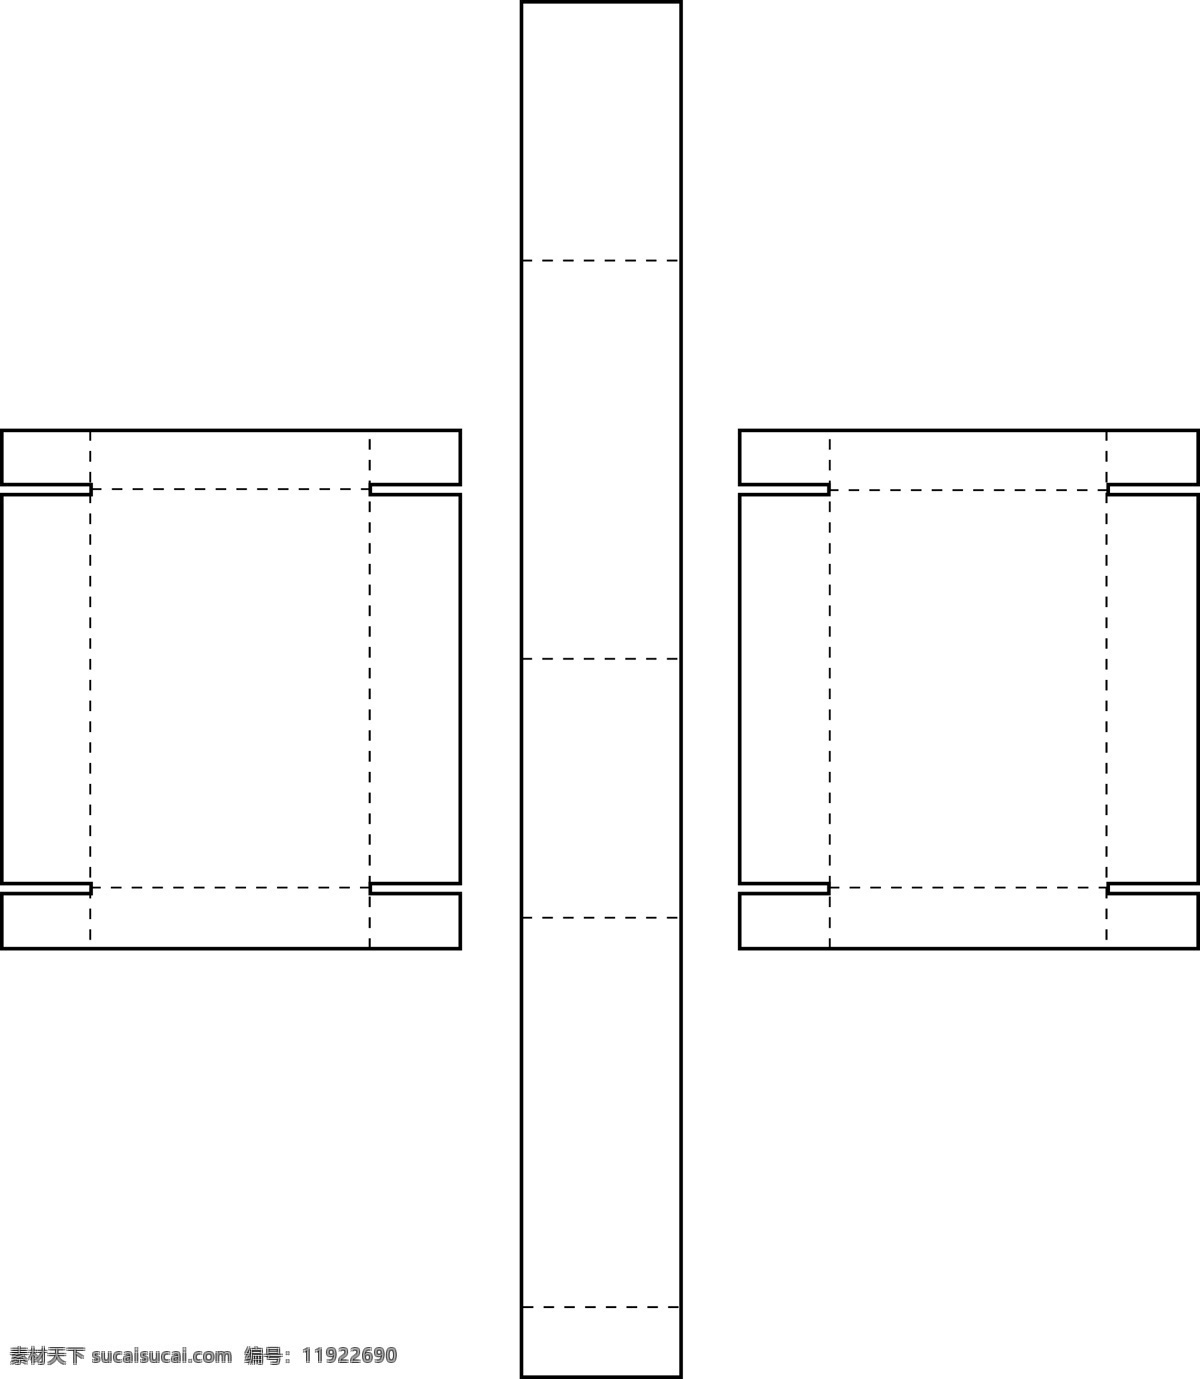 扣 合 型 长方体 包装盒 结构图 结构 扣合型 psd源文件 文件 源文件